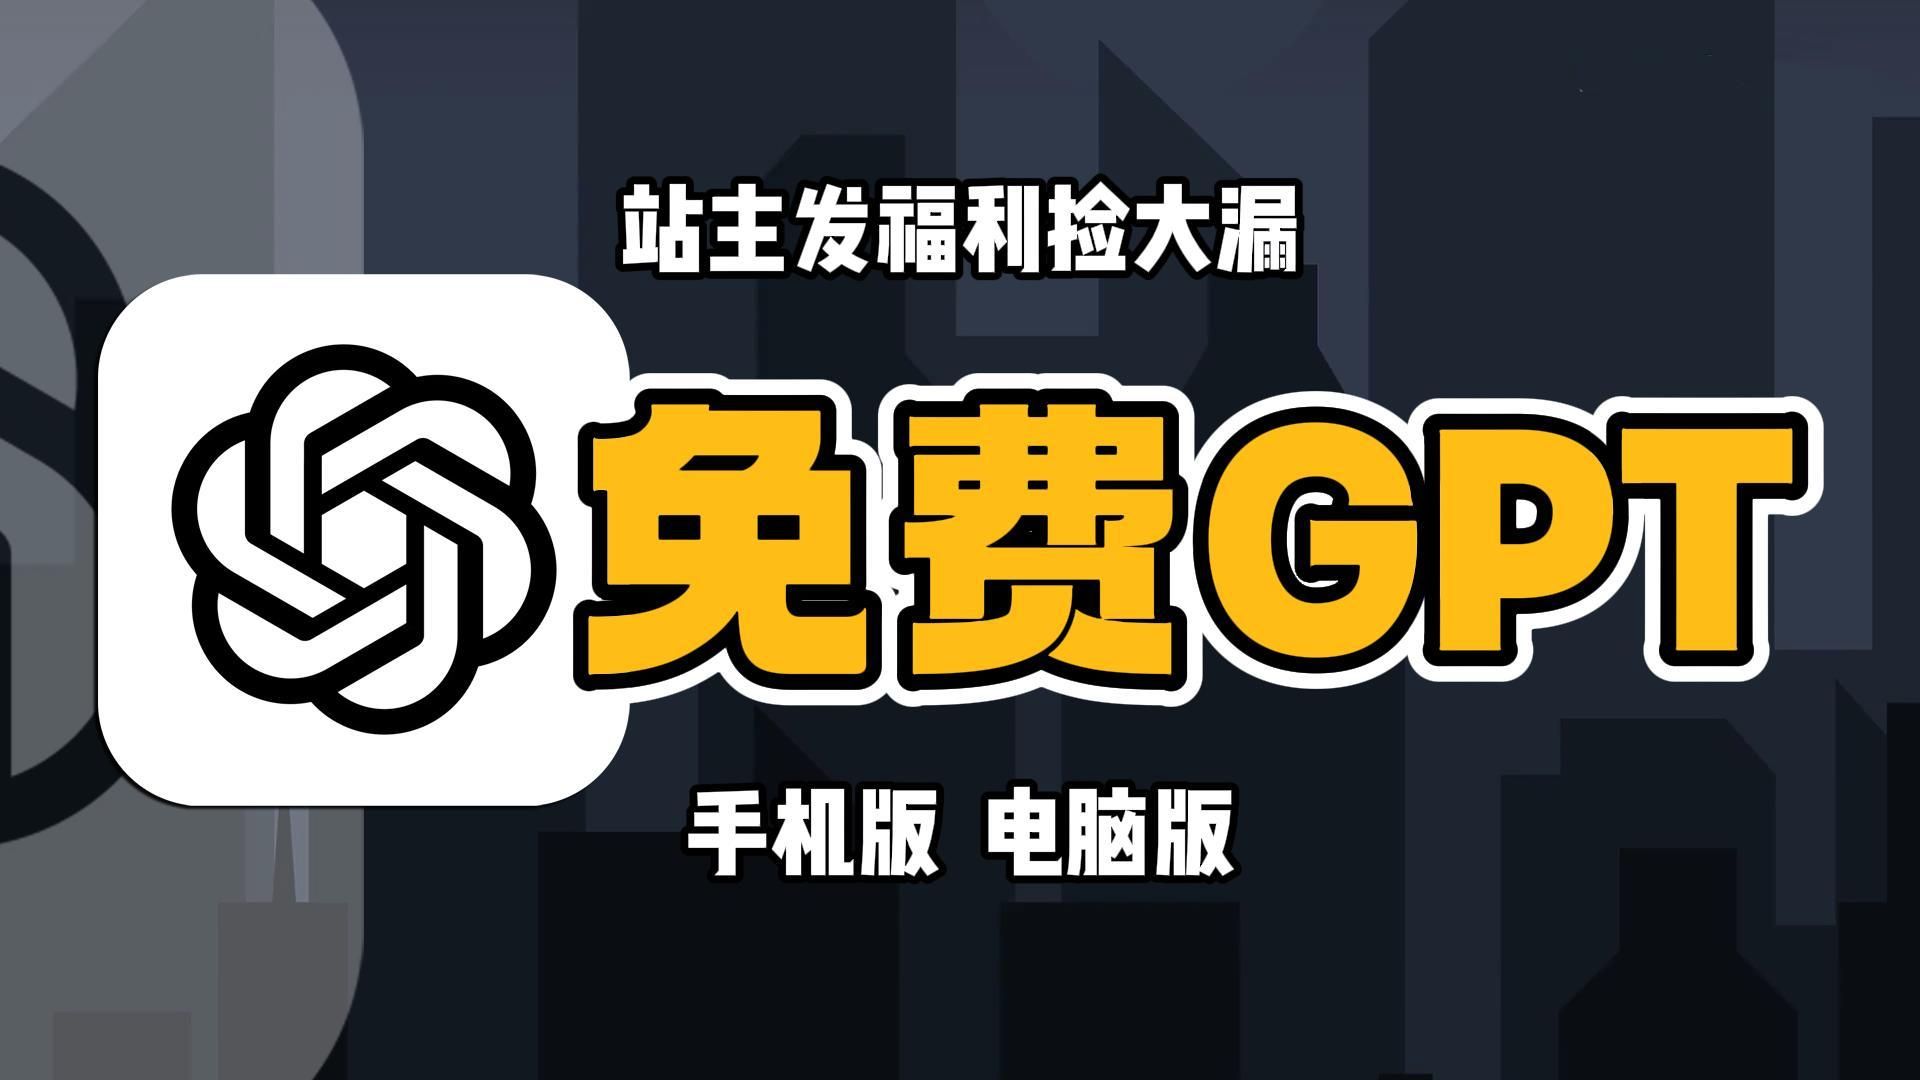 【国内白嫖】6月18日最新ChatGPT4.0